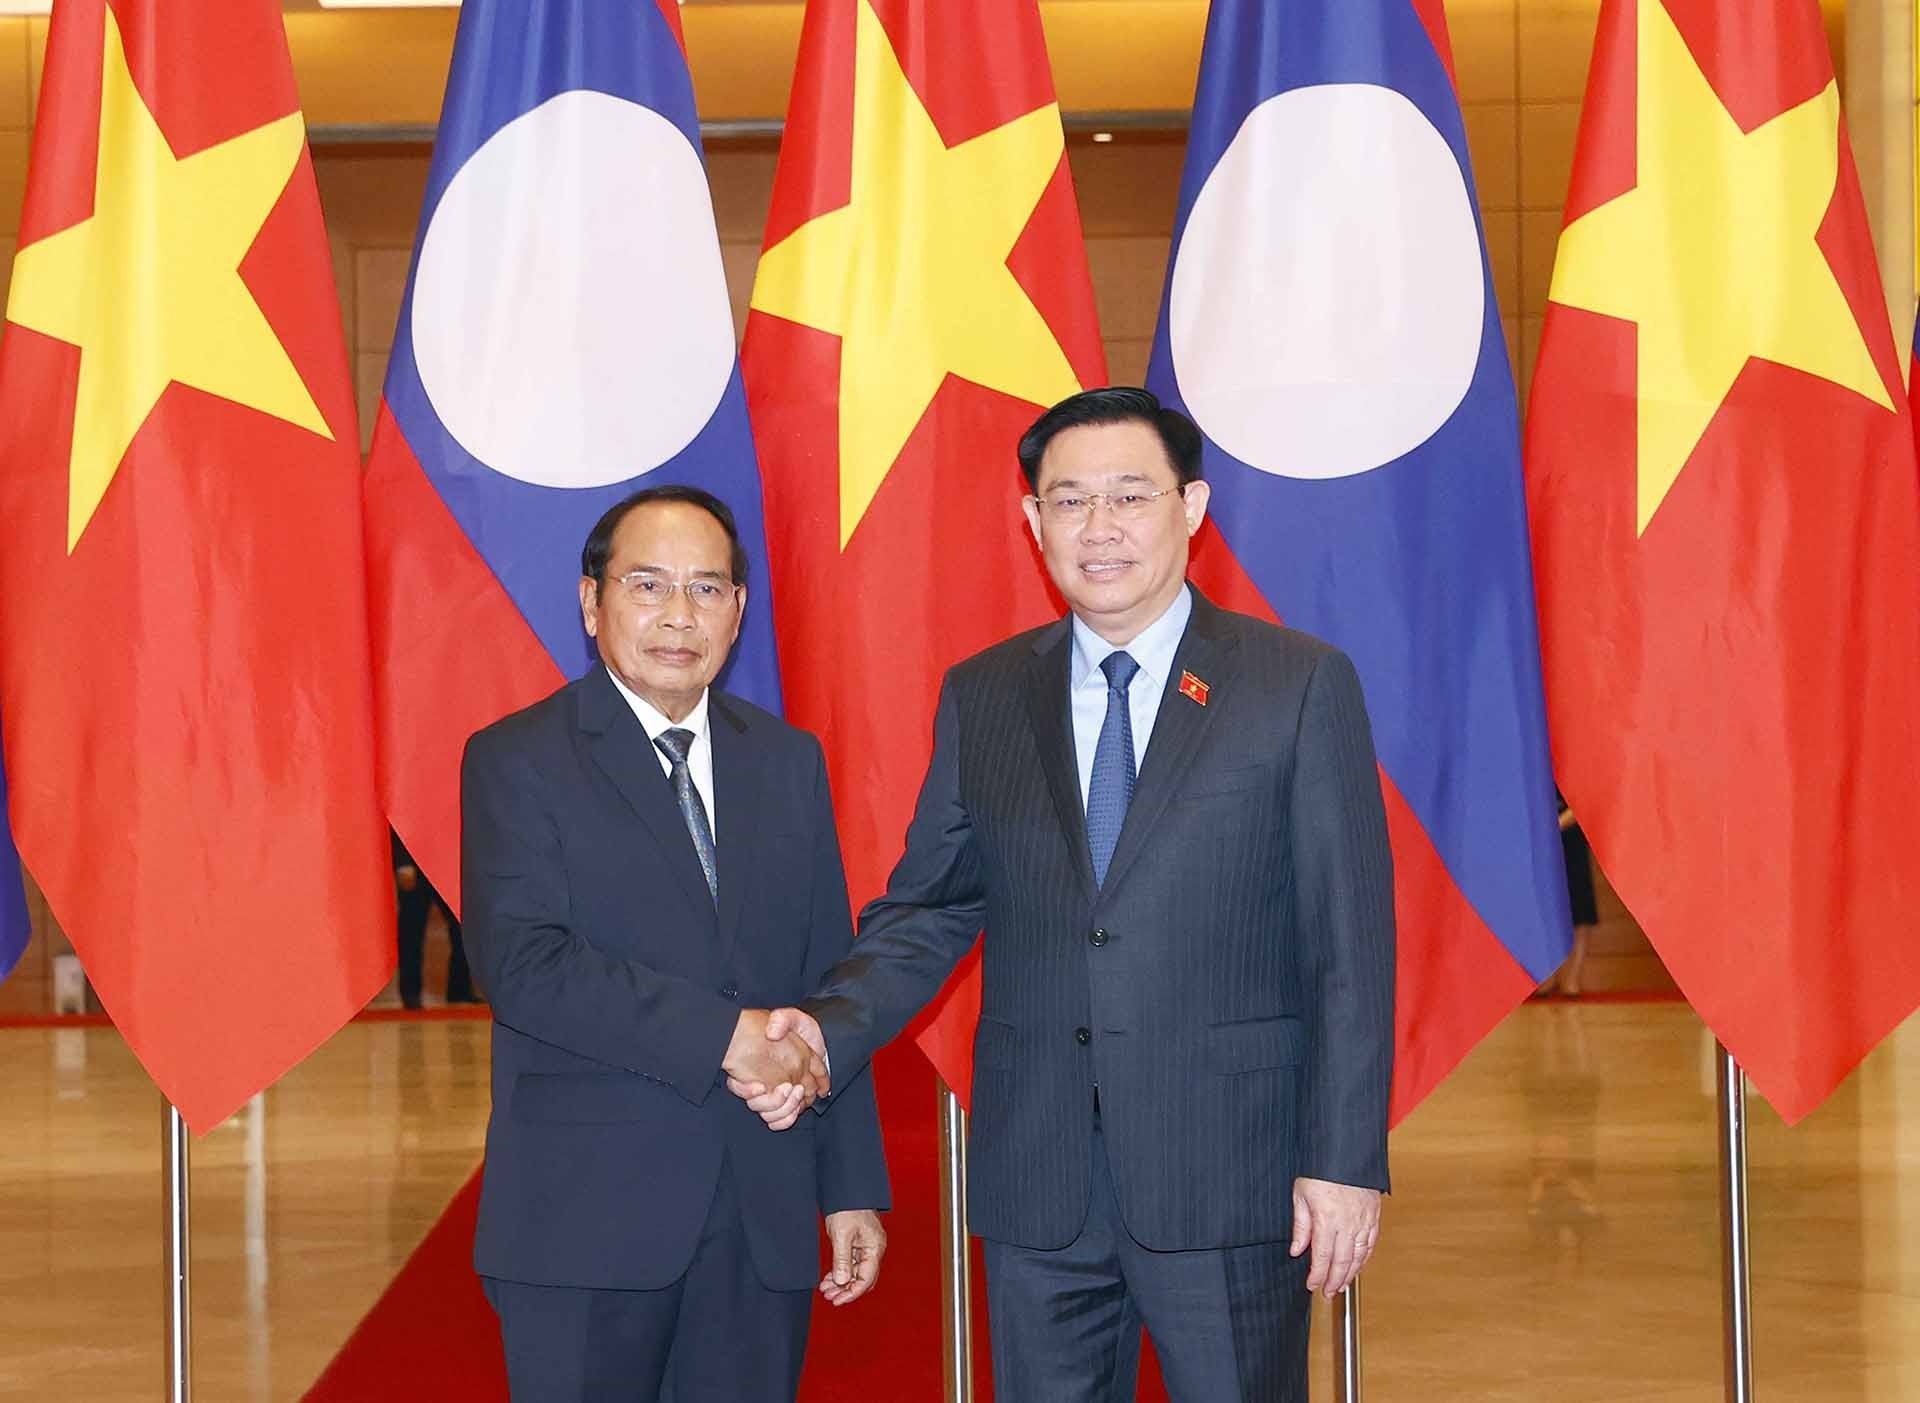 Chủ tịch Quốc hội Vương Đình Huệ và Thường trực Ban Bí thư Lào Bounthong Chitmany chụp ảnh chung. (Nguồn: TTXVN)